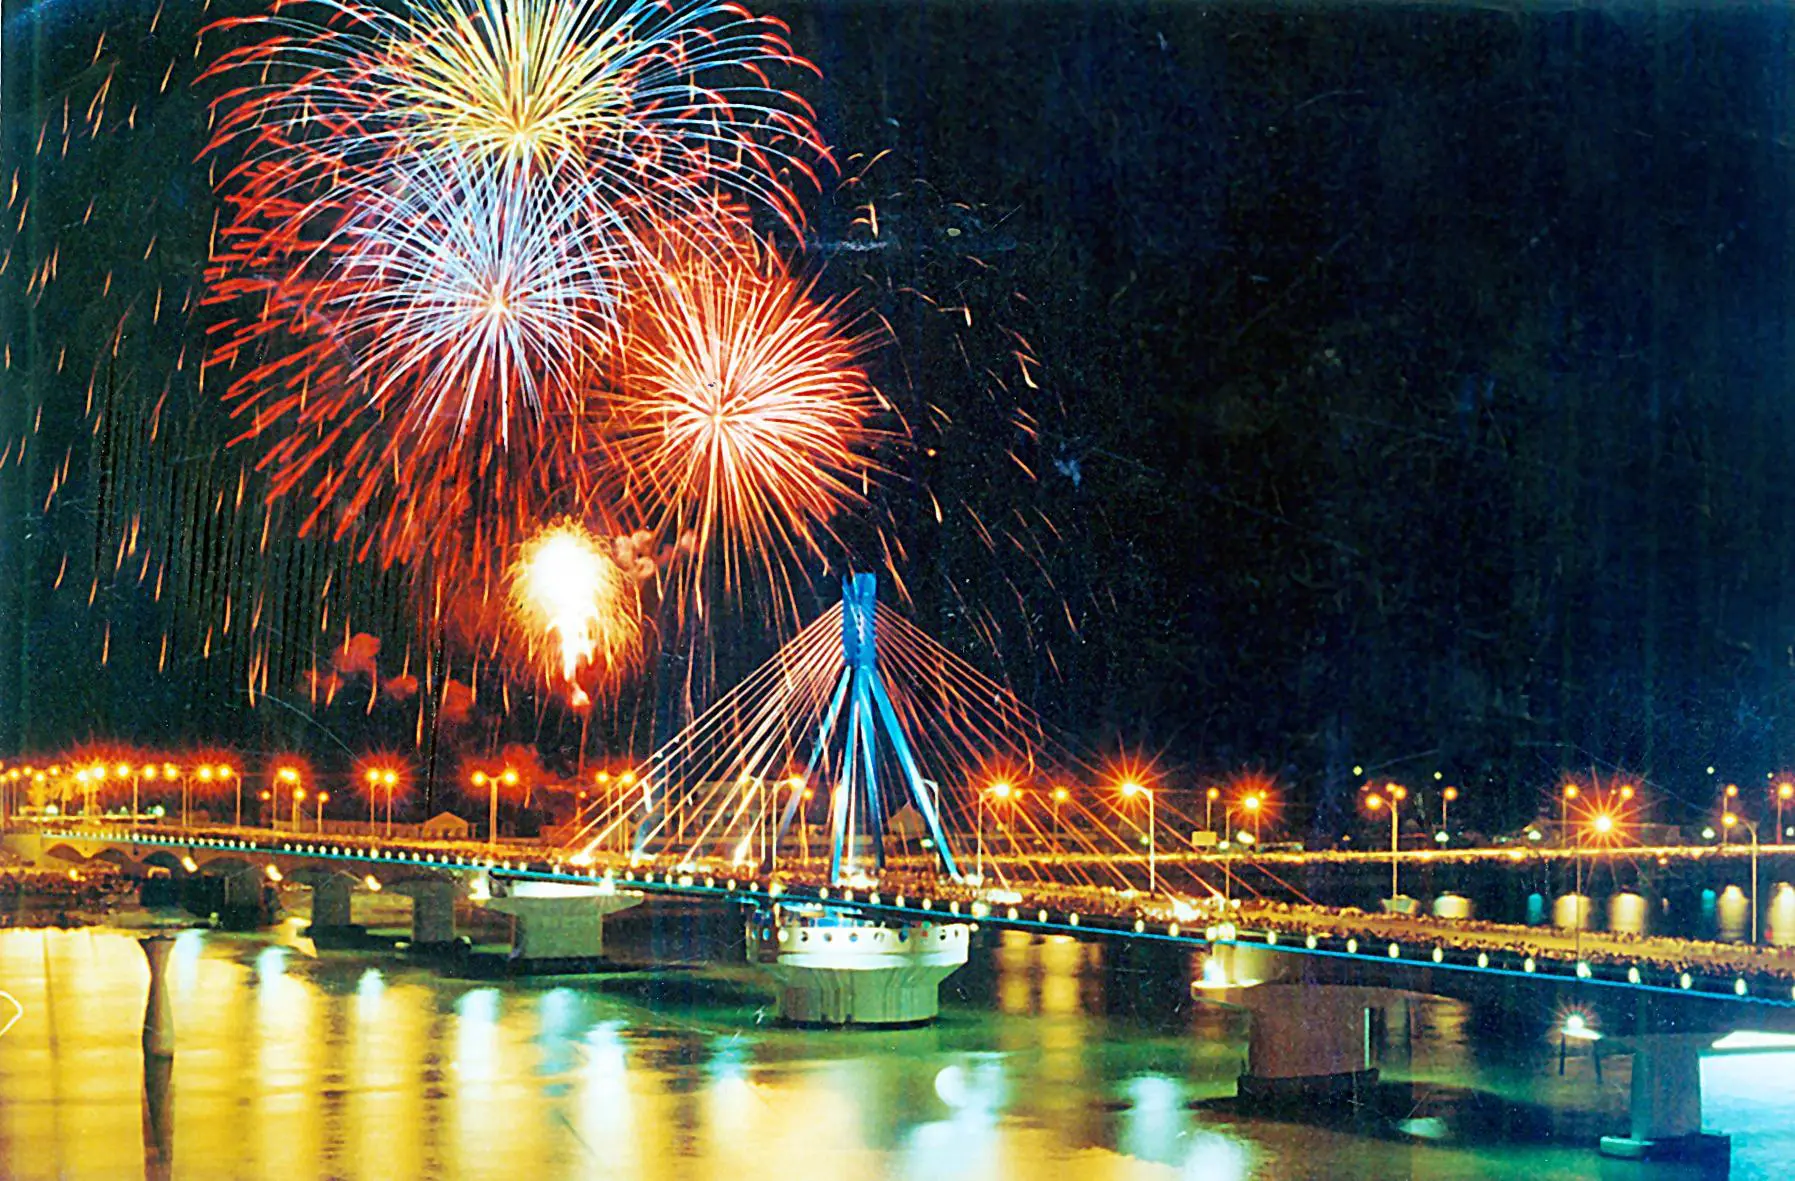 Cầu Đà Nẵng địa điểm xem bắn pháo hoa kết Nối Nghệ Thuật Trên Mọi Góc Cạnh.